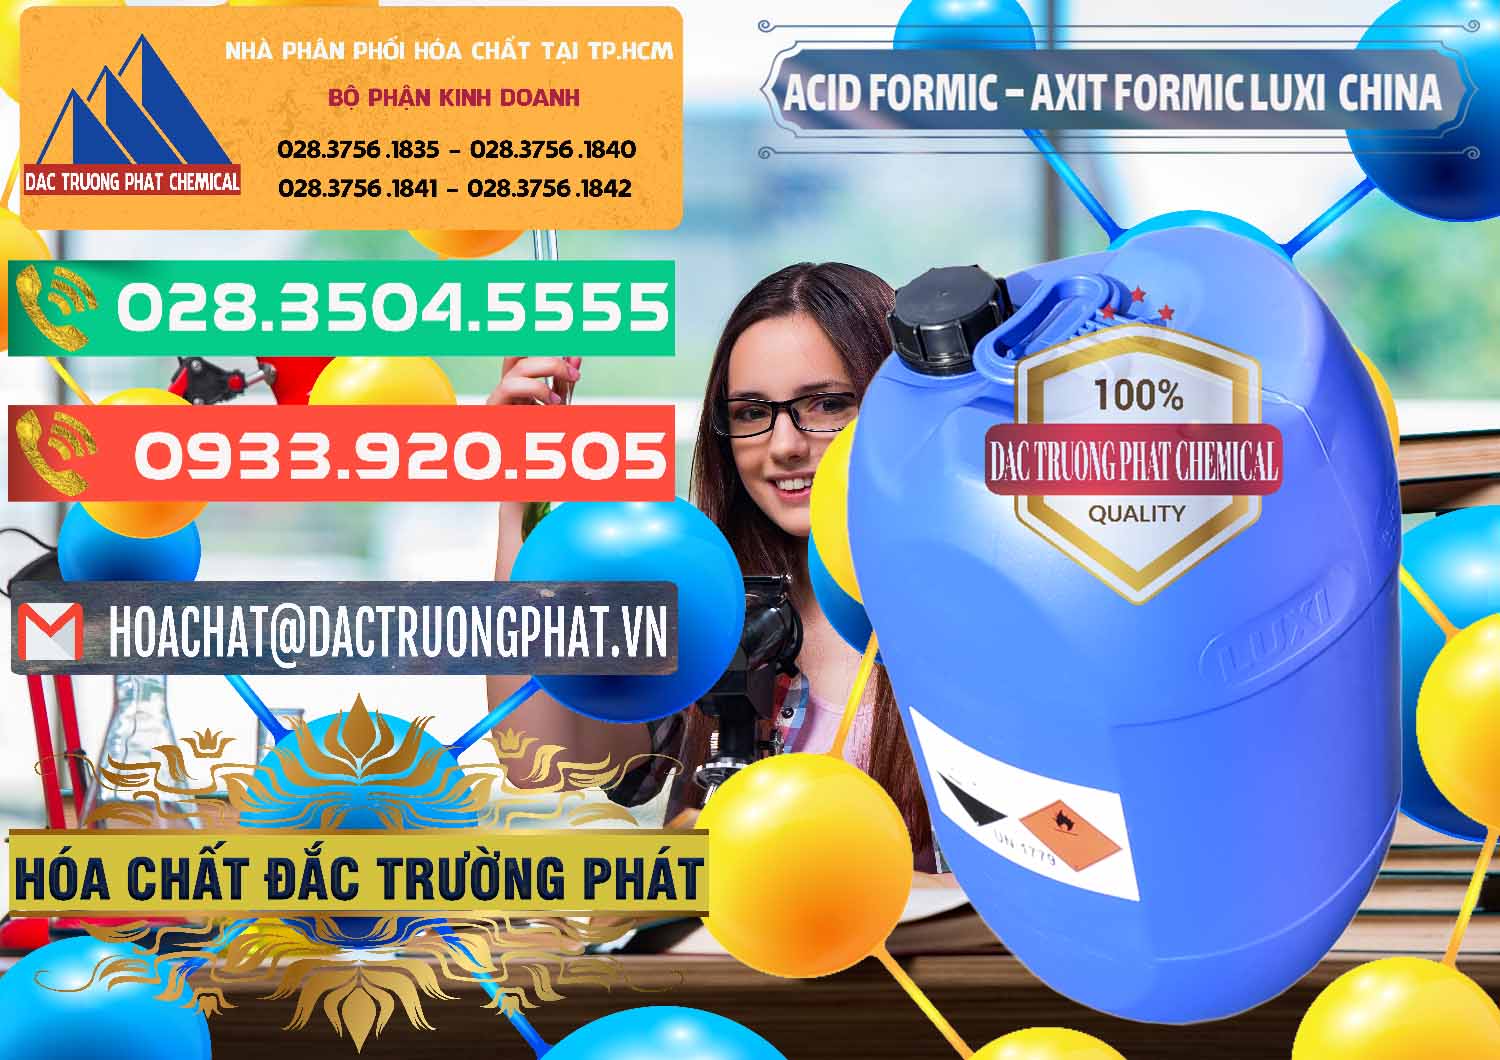 Nơi bán và cung ứng Acid Formic - Axit Formic Luxi Trung Quốc China - 0029 - Công ty kinh doanh và phân phối hóa chất tại TP.HCM - congtyhoachat.com.vn